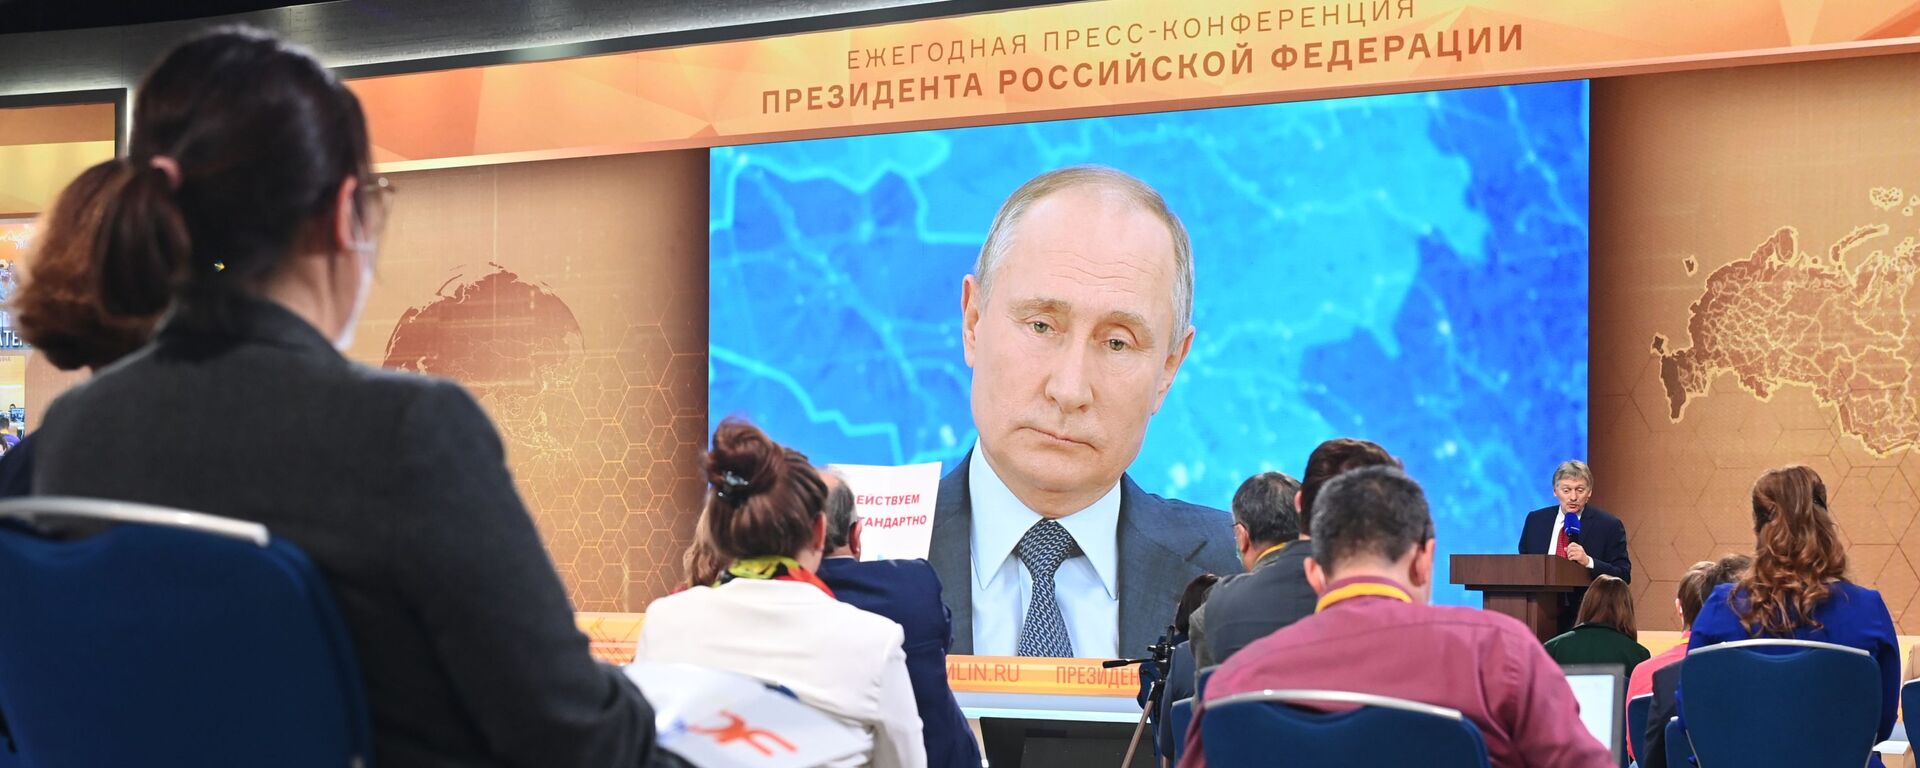 Президент России Владимир Путин участвует в ежегодной пресс-конференции в режиме видеоконференции, 17 декабря 2020 - Sputnik Latvija, 1920, 18.12.2020